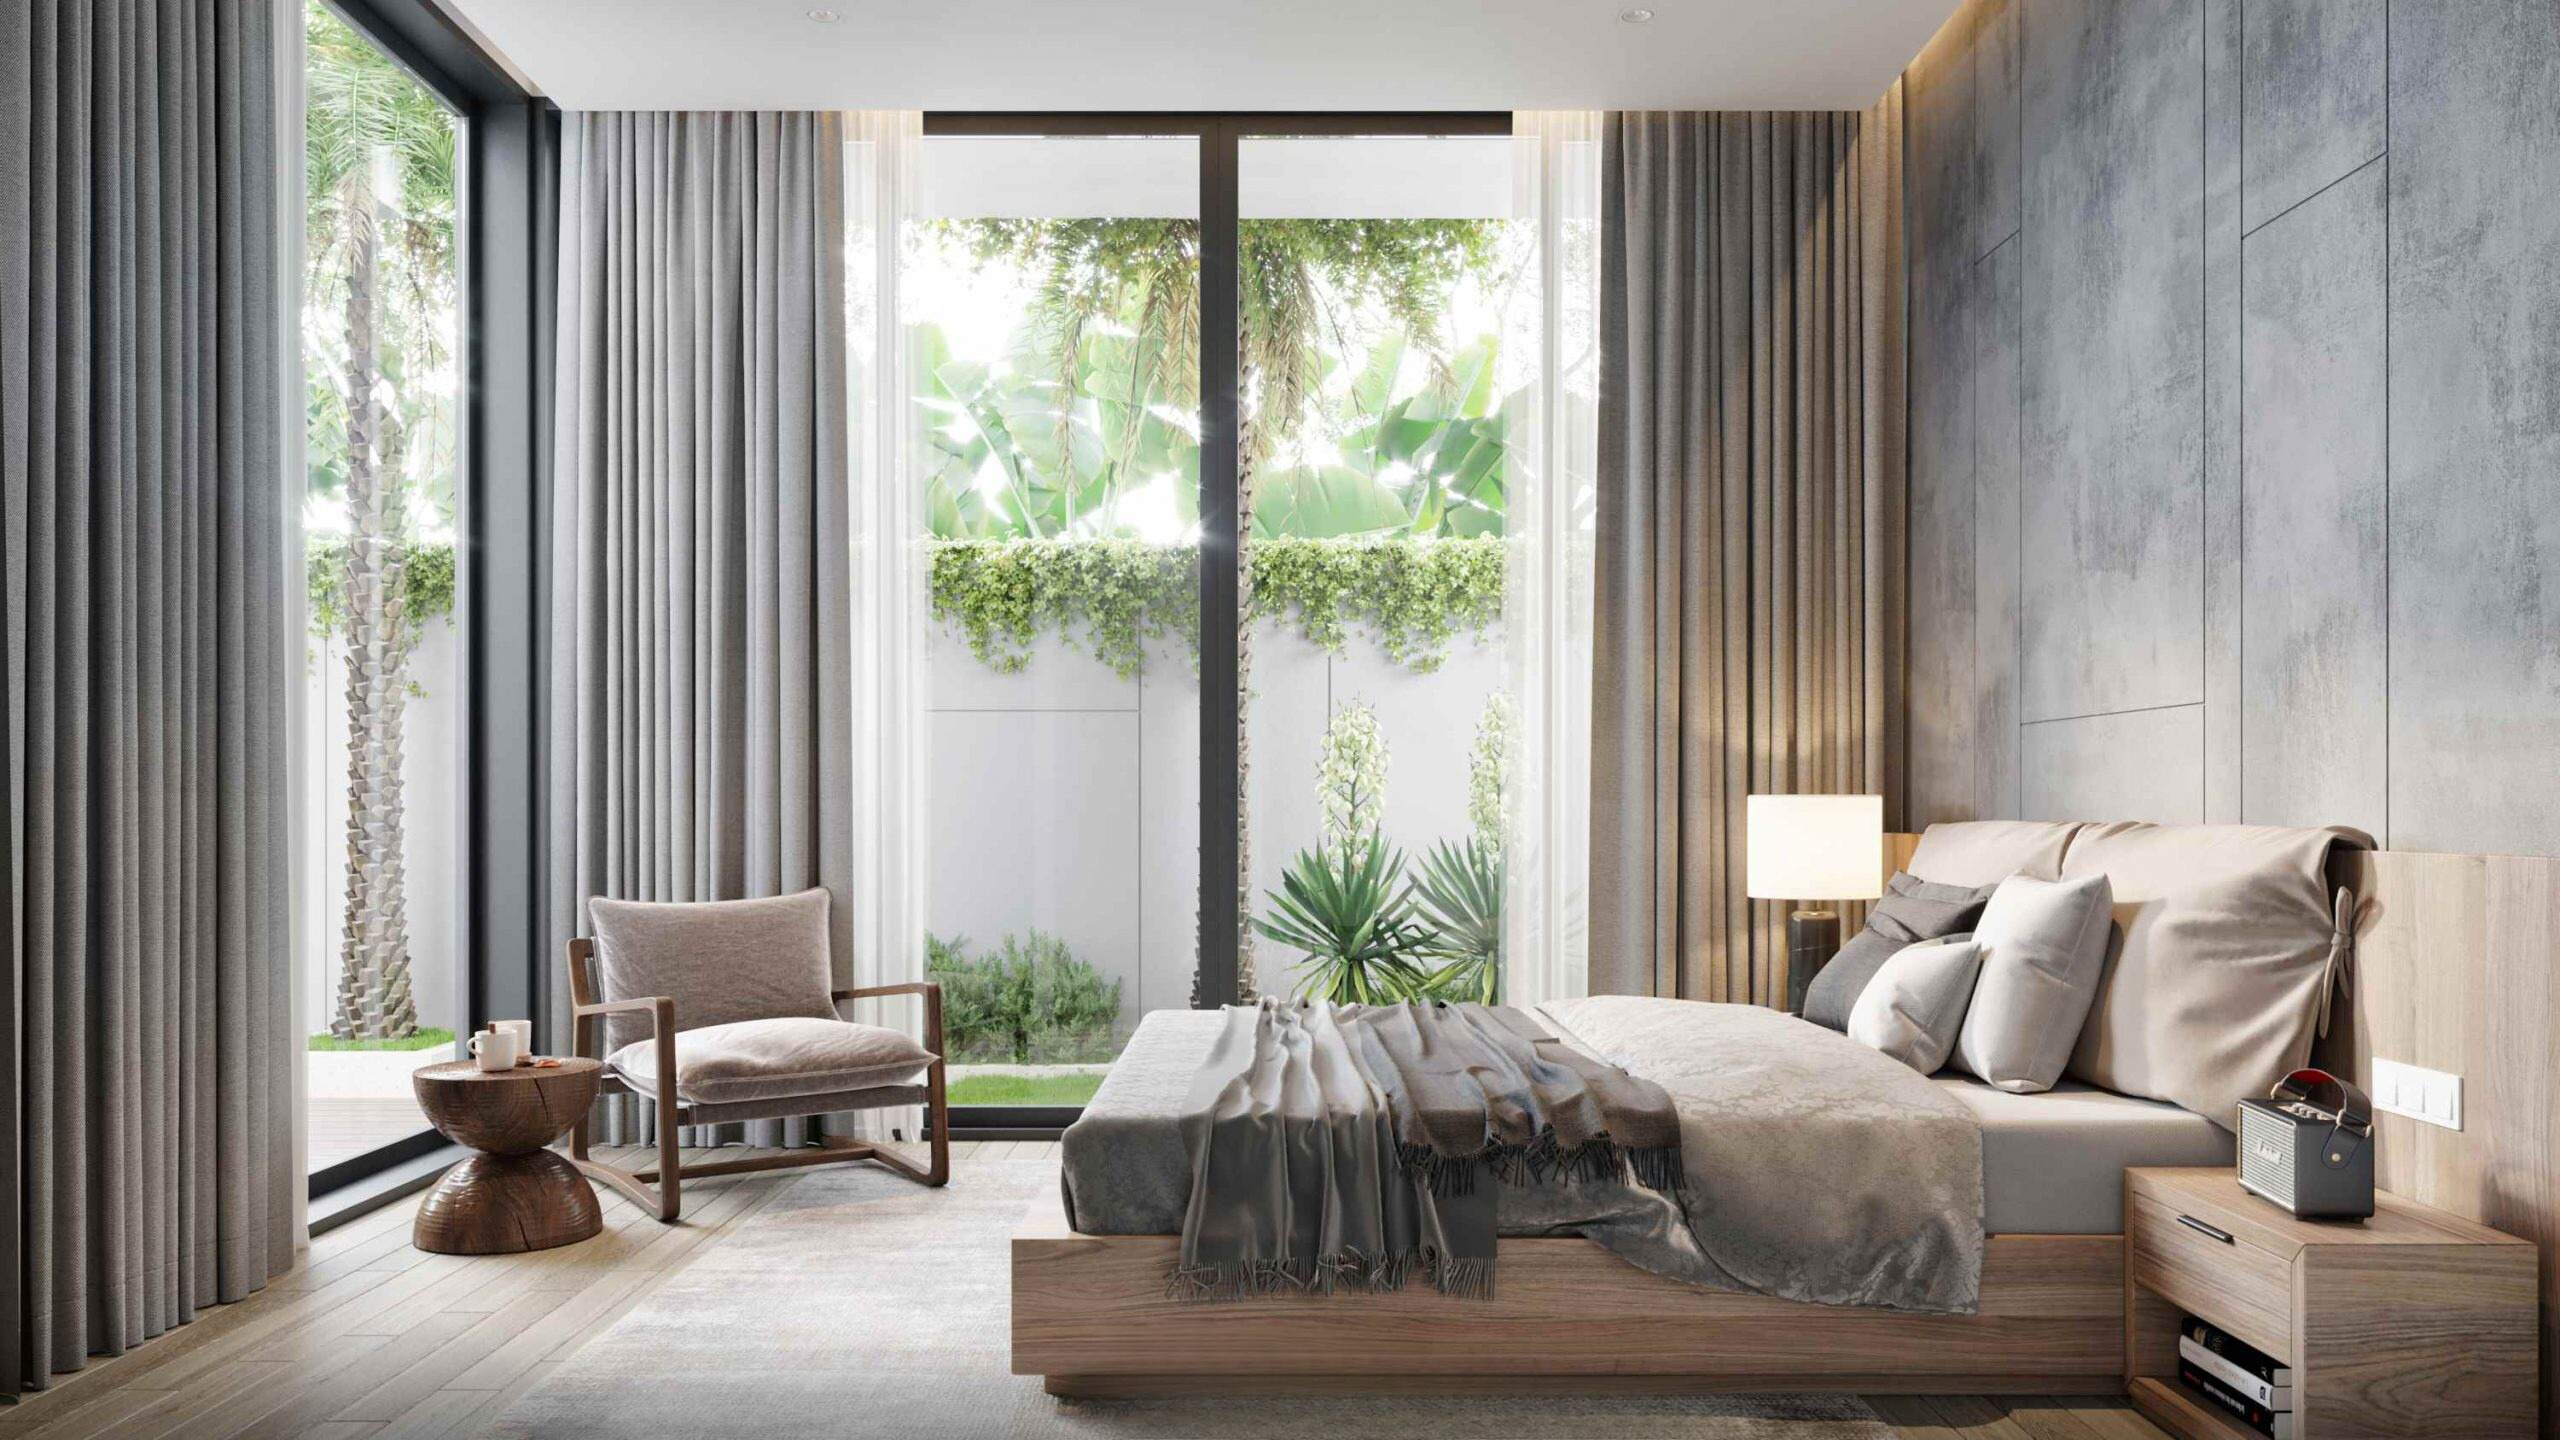 Không gian phòng ngủ mang nét đẹp mộc mạc, kết nối thiên nhiên qua các tấm kính lớn 